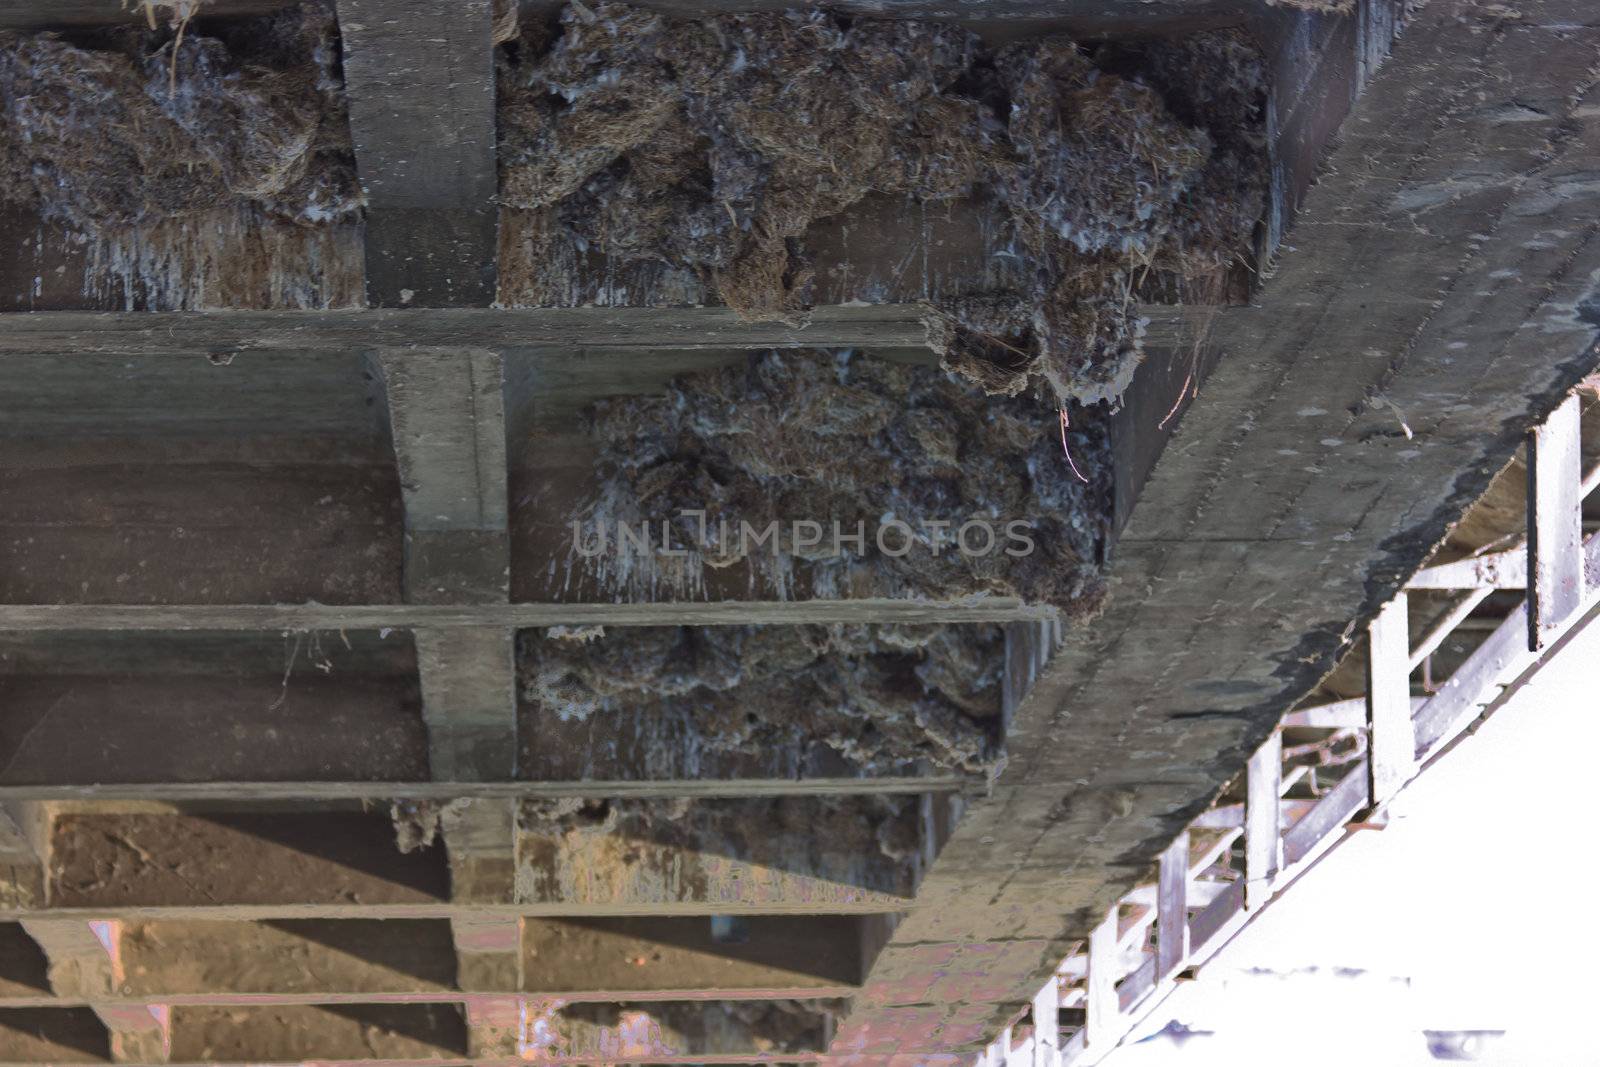 Birds nest under the bridge by sutipp11